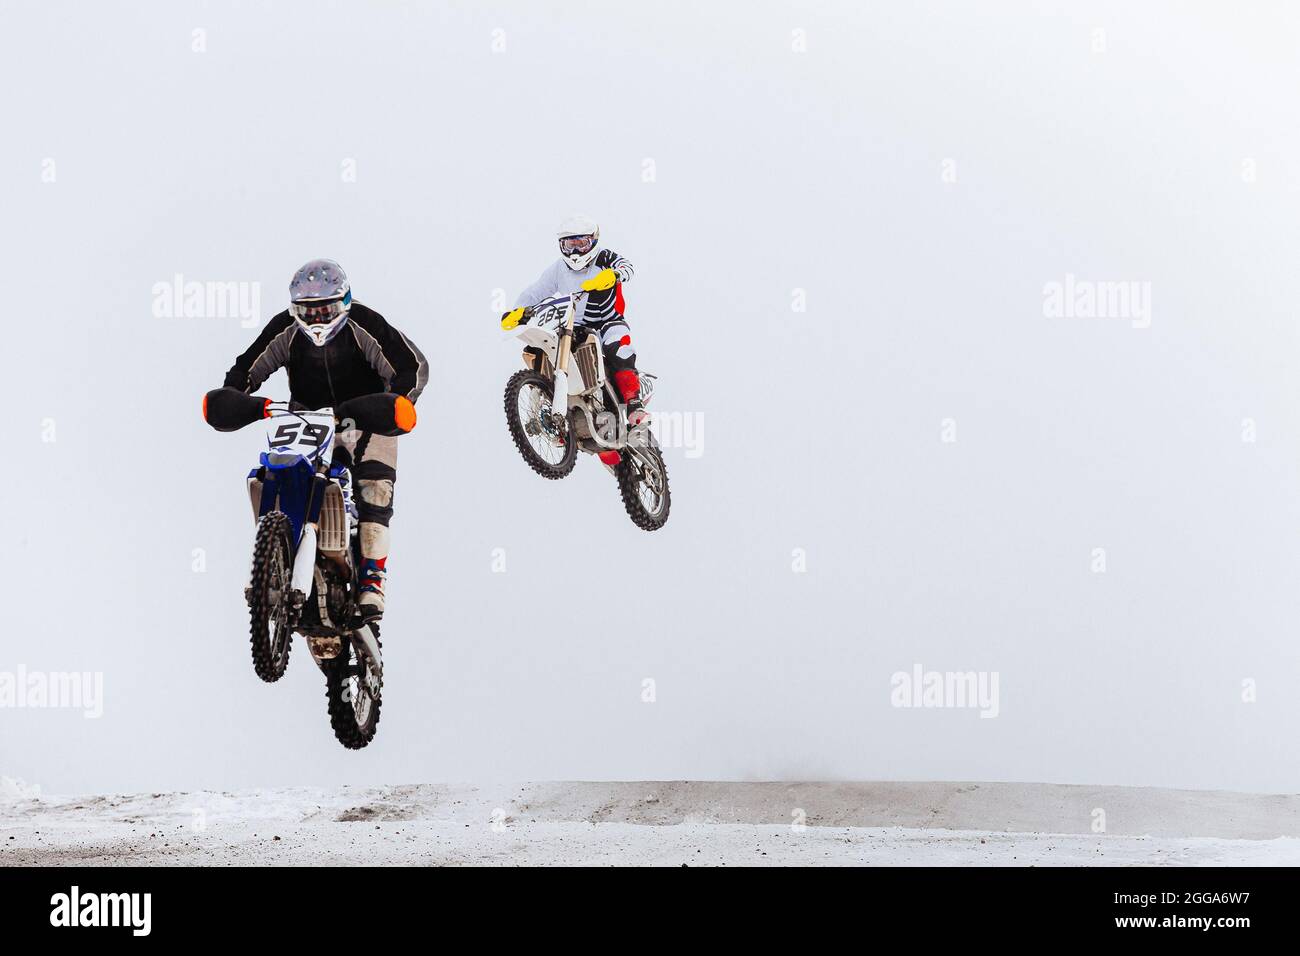 deux motocyclistes sautent la course d'enduro en hiver Banque D'Images